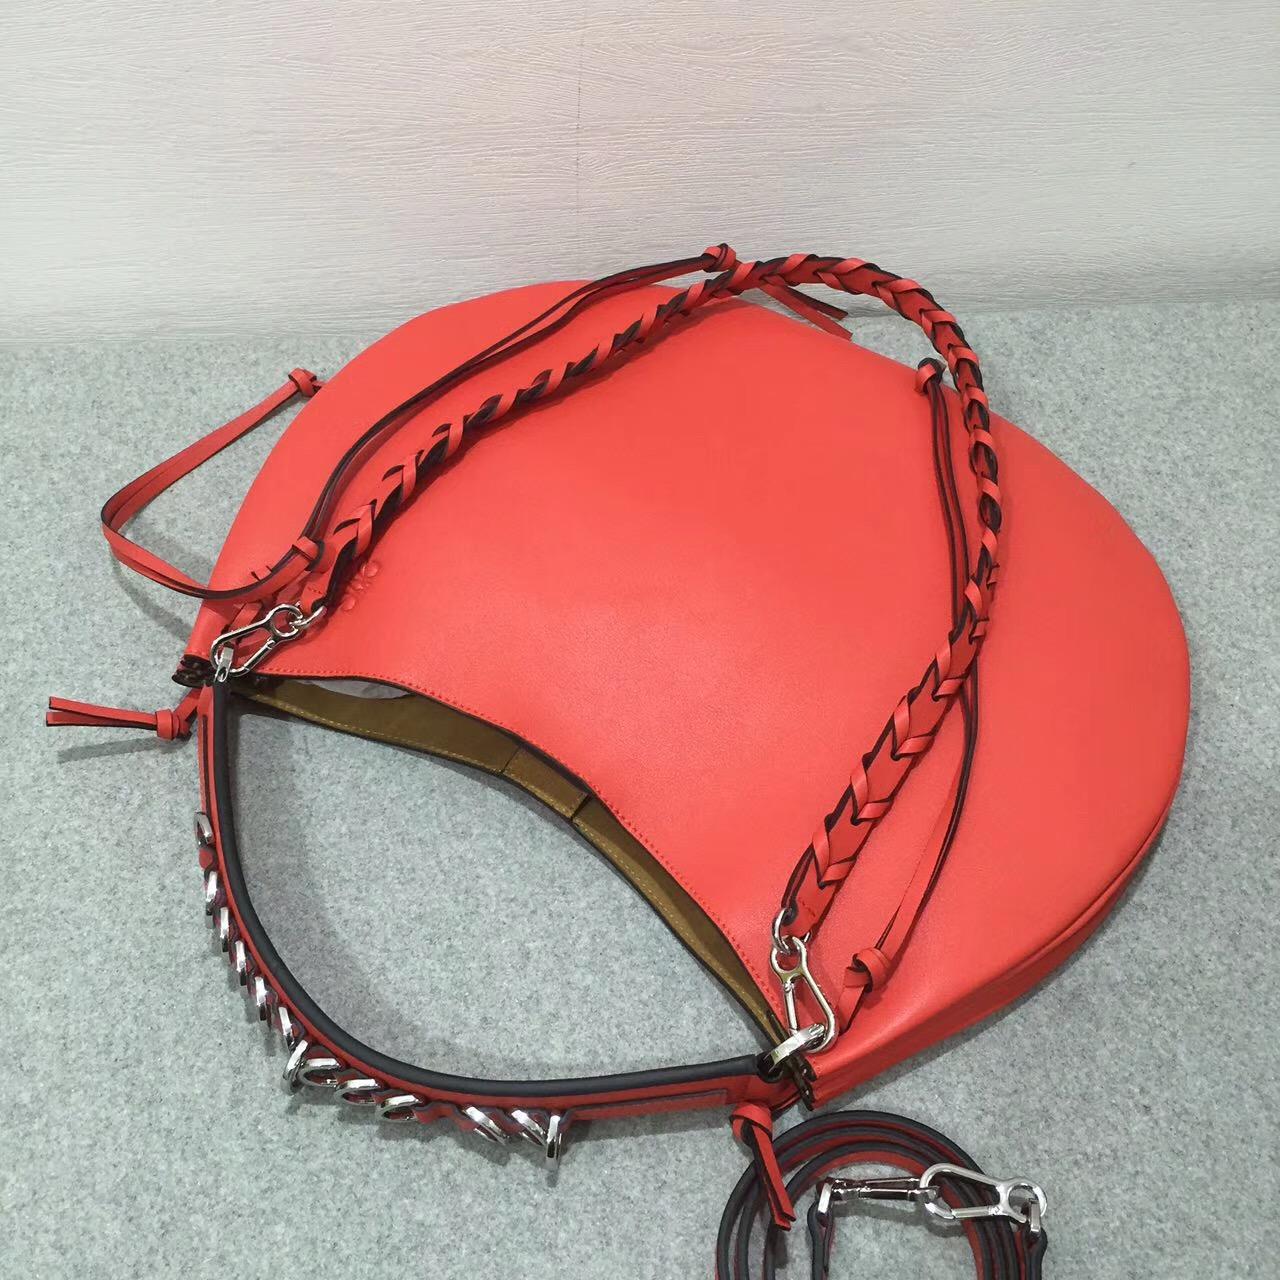 羅意威 Loewe Fortune hobo bag 系列限量版半月包红色 小牛皮 內襯鹿皮